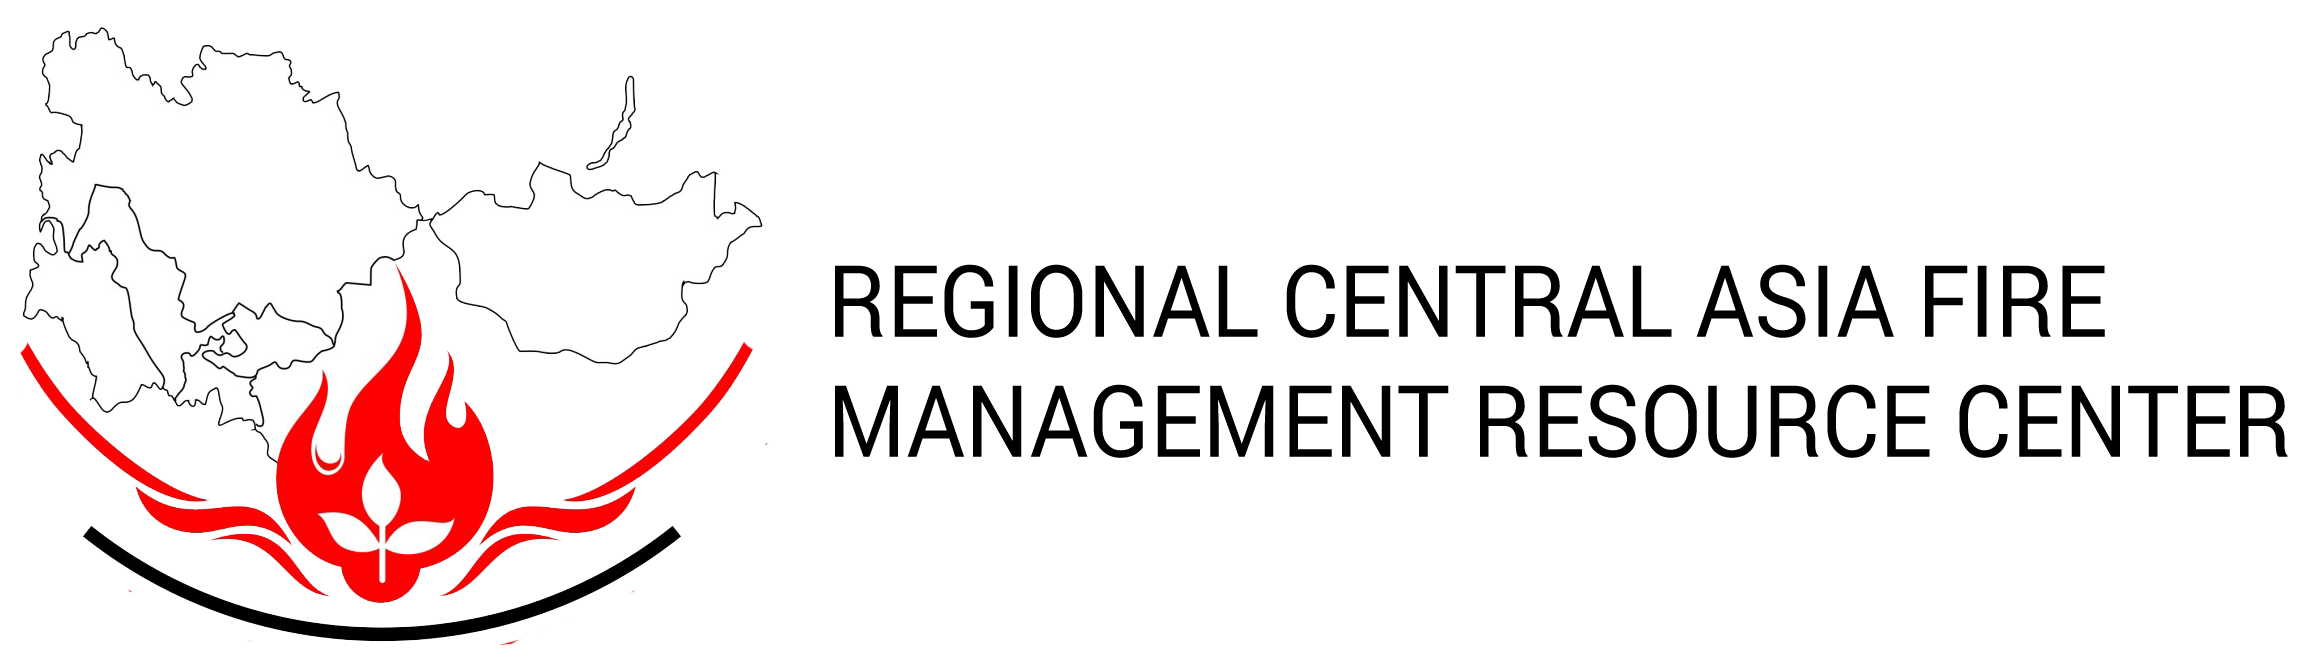 RCAFRMC-Logo-2-1024x1024